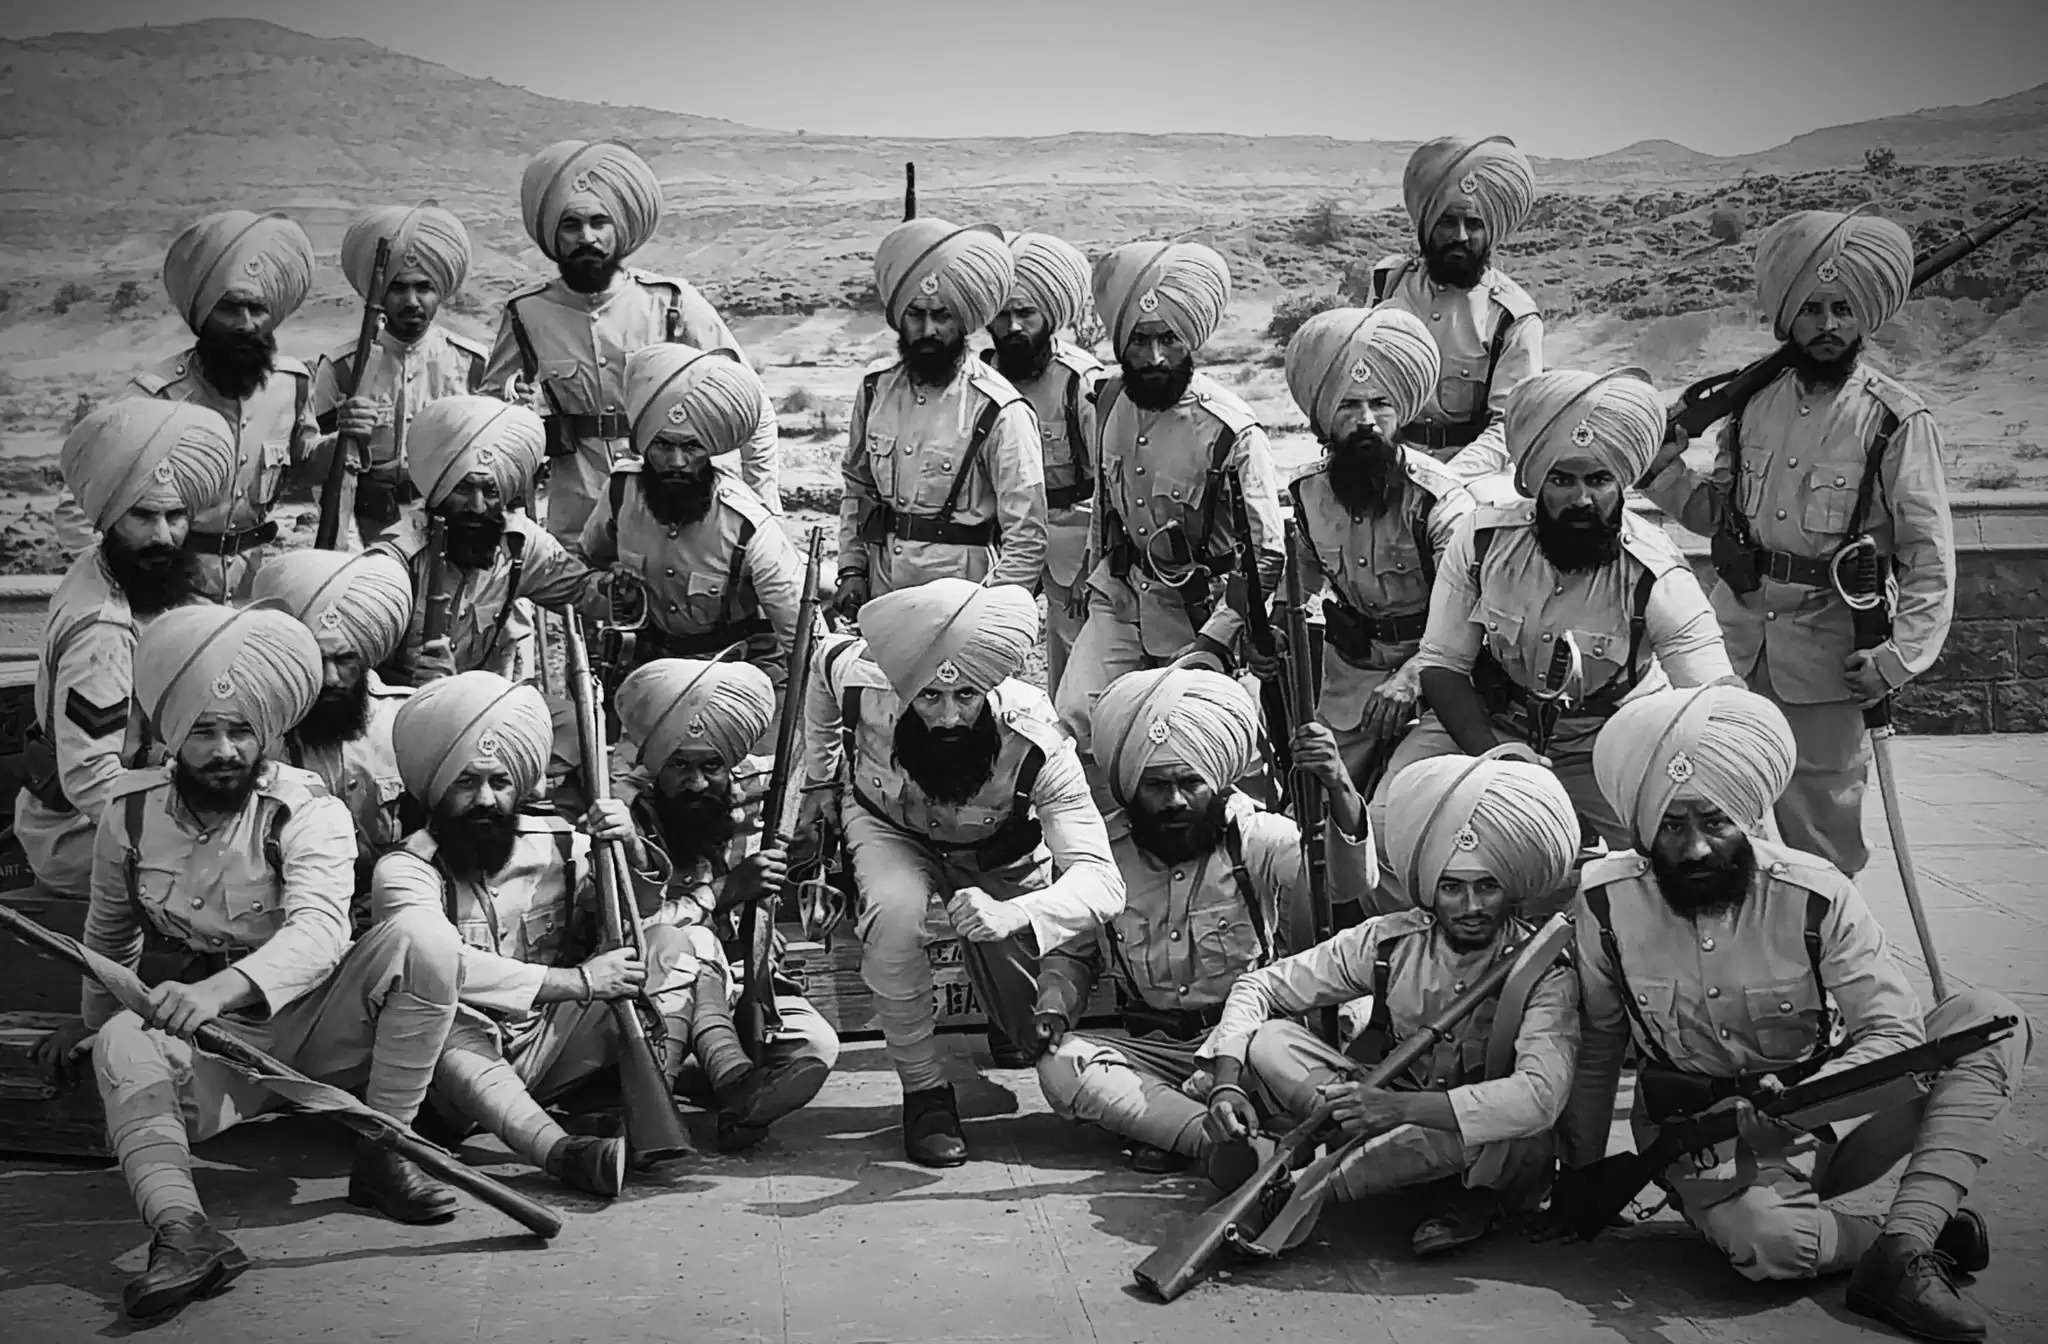 सारागढ़ी युद्ध के 125 साल:  10 हजार अफगान हमलावरों पर भारी पड़े थे 21 सिख सैनिक, इसपर बनी थी यह मशहूर फिल्म